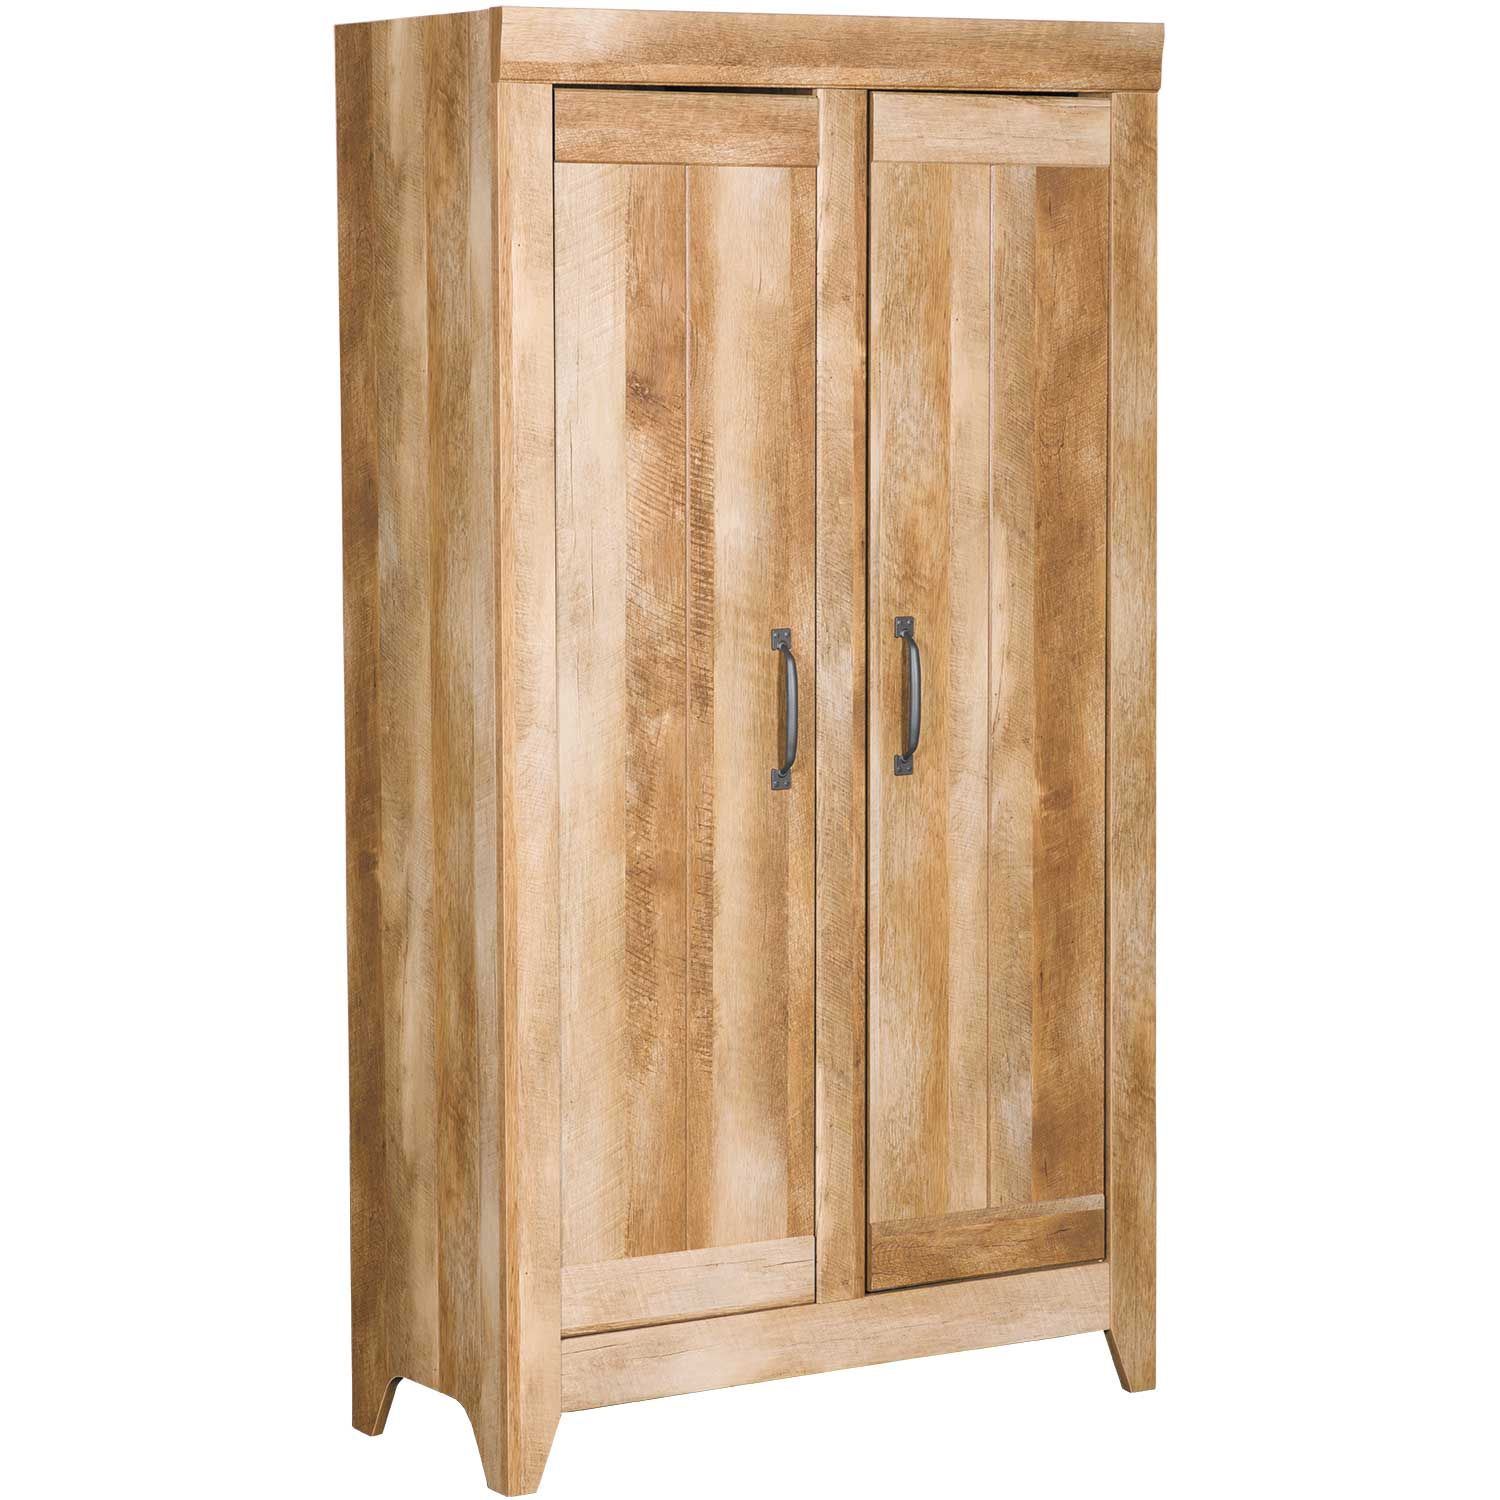 https://images.afw.com/images/thumbs/0065324_adept-wide-storage-cabinet-craftsman-oak.jpeg